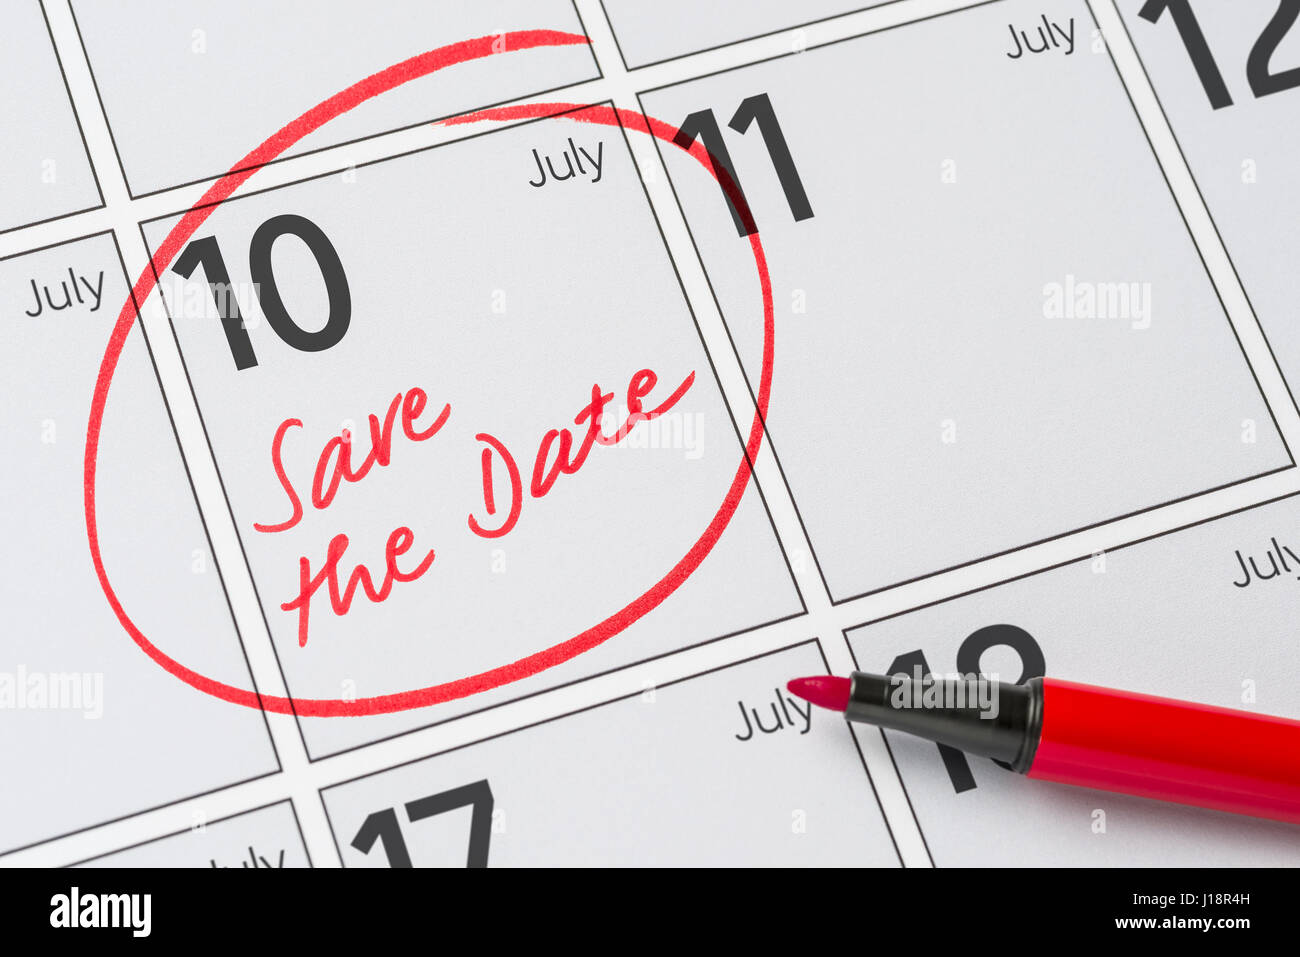 Enregistrer la date inscrite sur un calendrier - Juillet 10 Banque D'Images